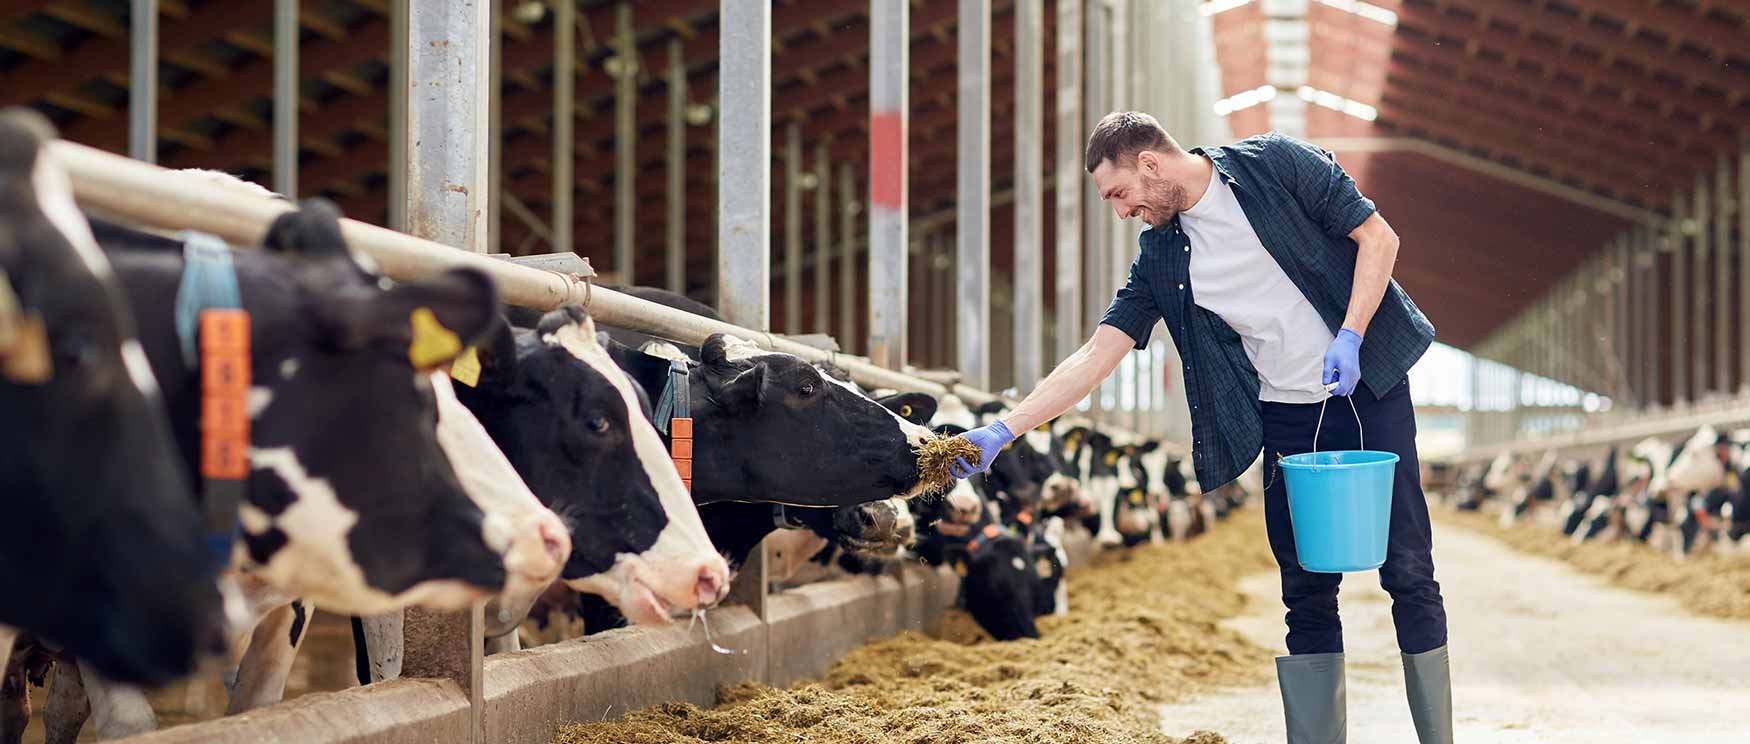 farmer feeding dairy cows